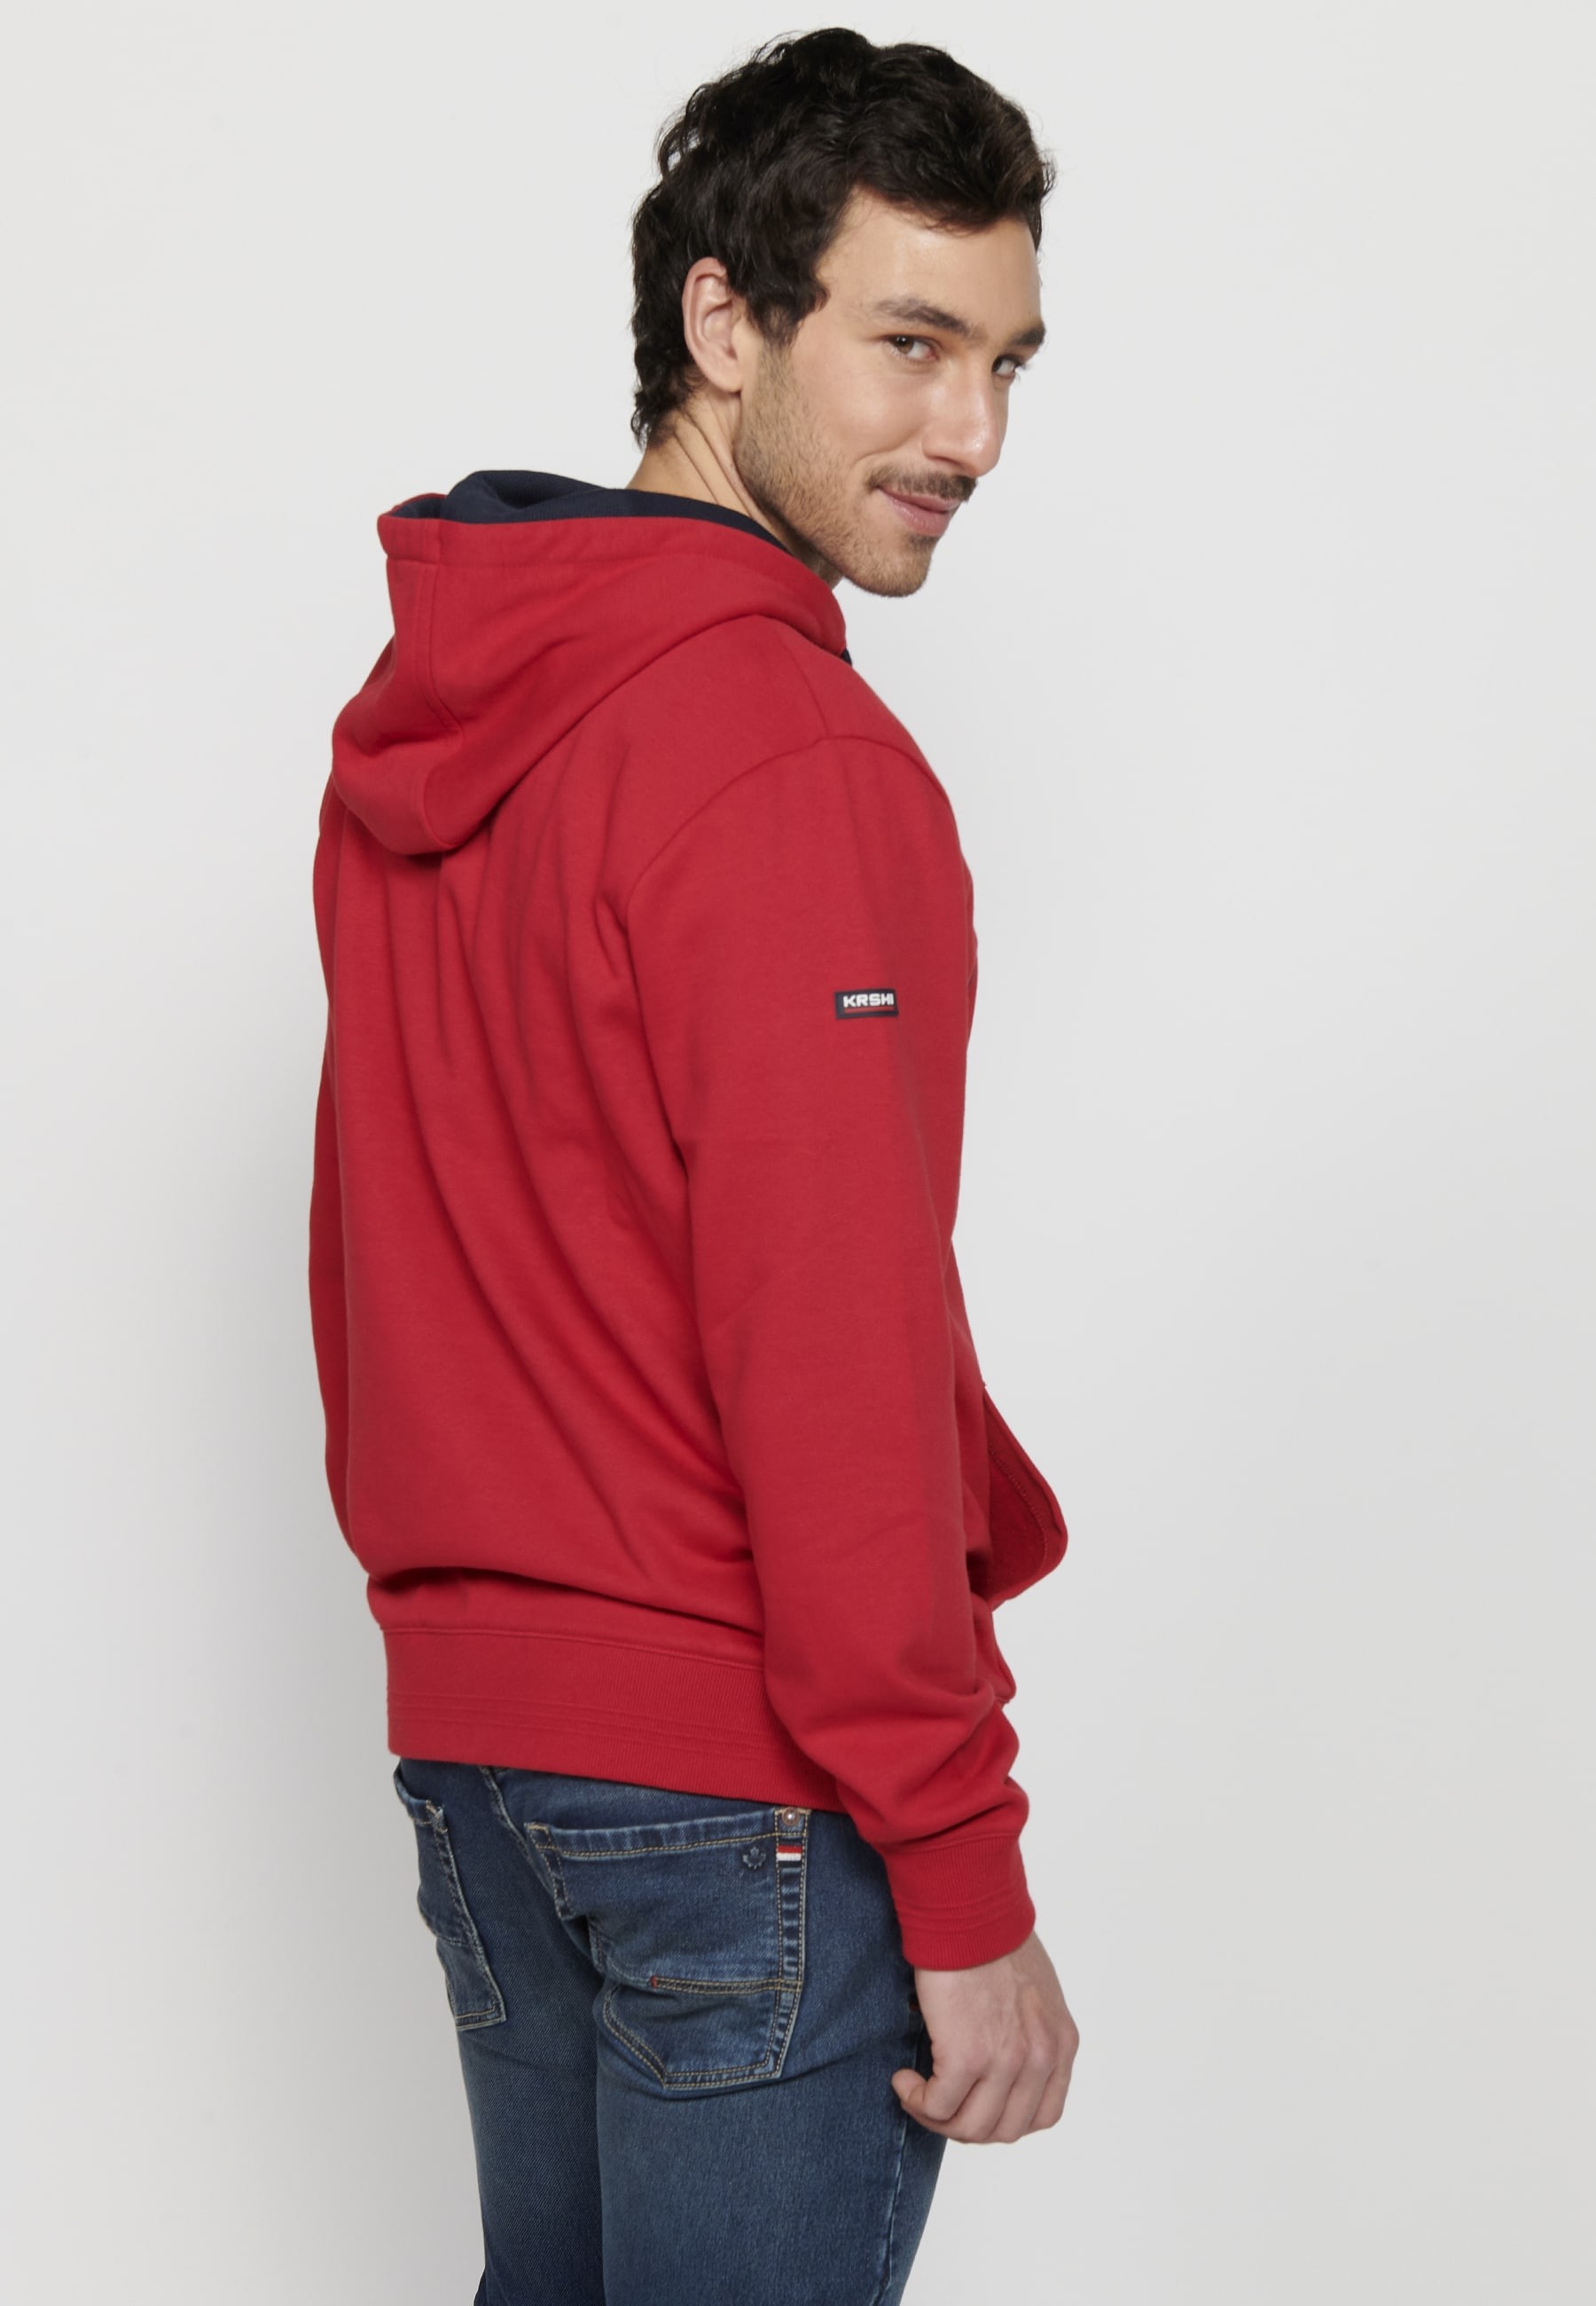 Herren-Sweatshirt mit Kapuze und langen Ärmeln in Rot mit geprägtem Detail vorne 7